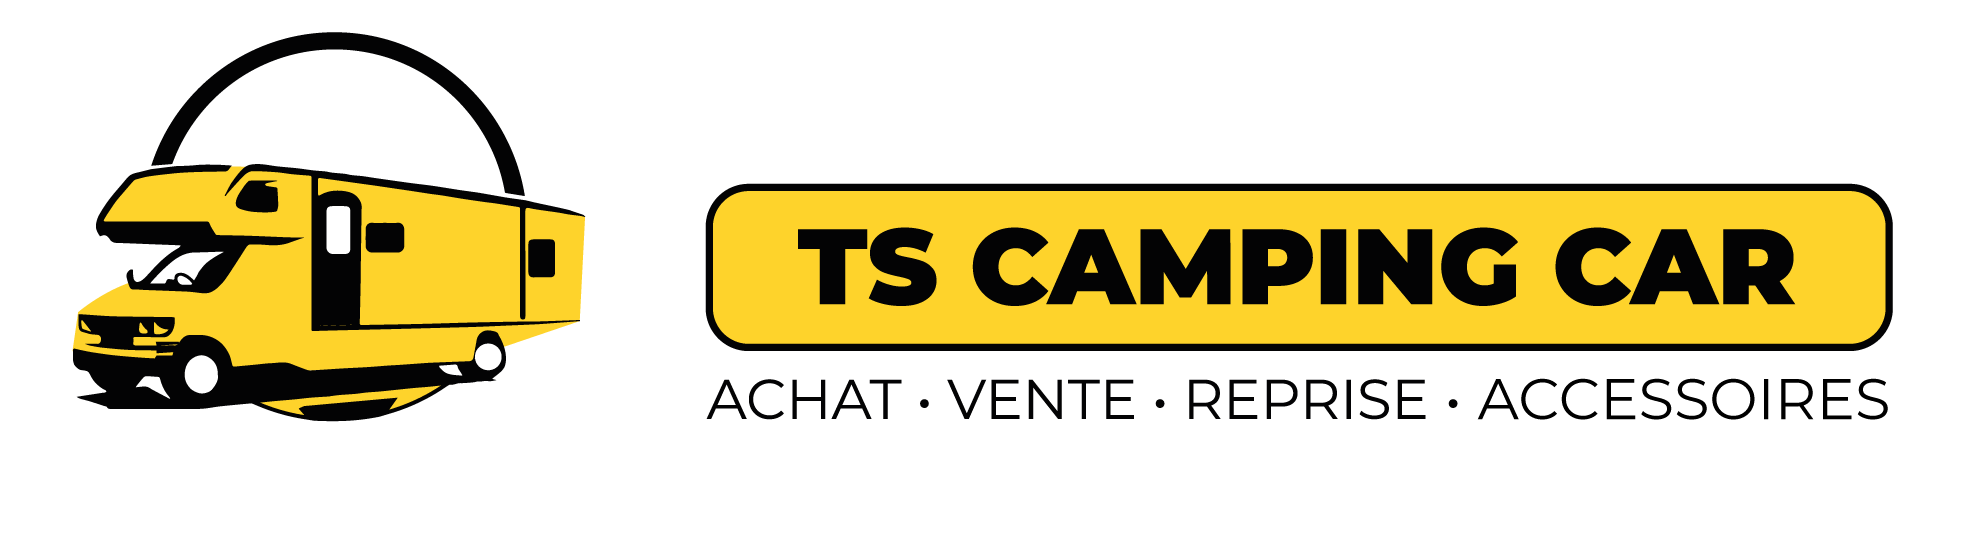 TS Camping Car